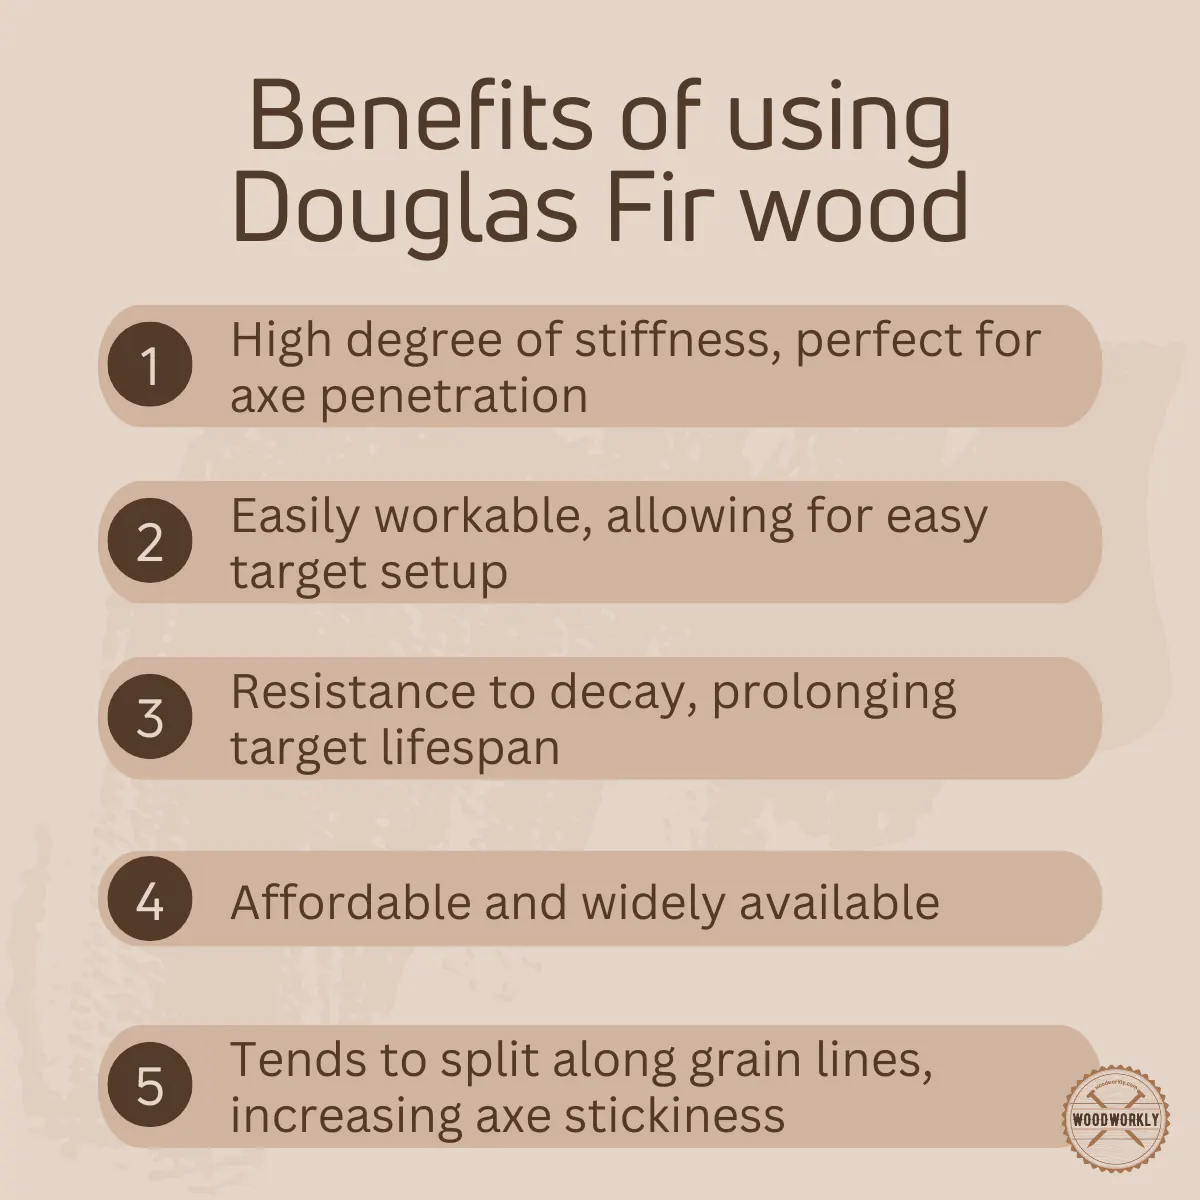 Benefits of using Douglas Fir wood as an axe throwing target